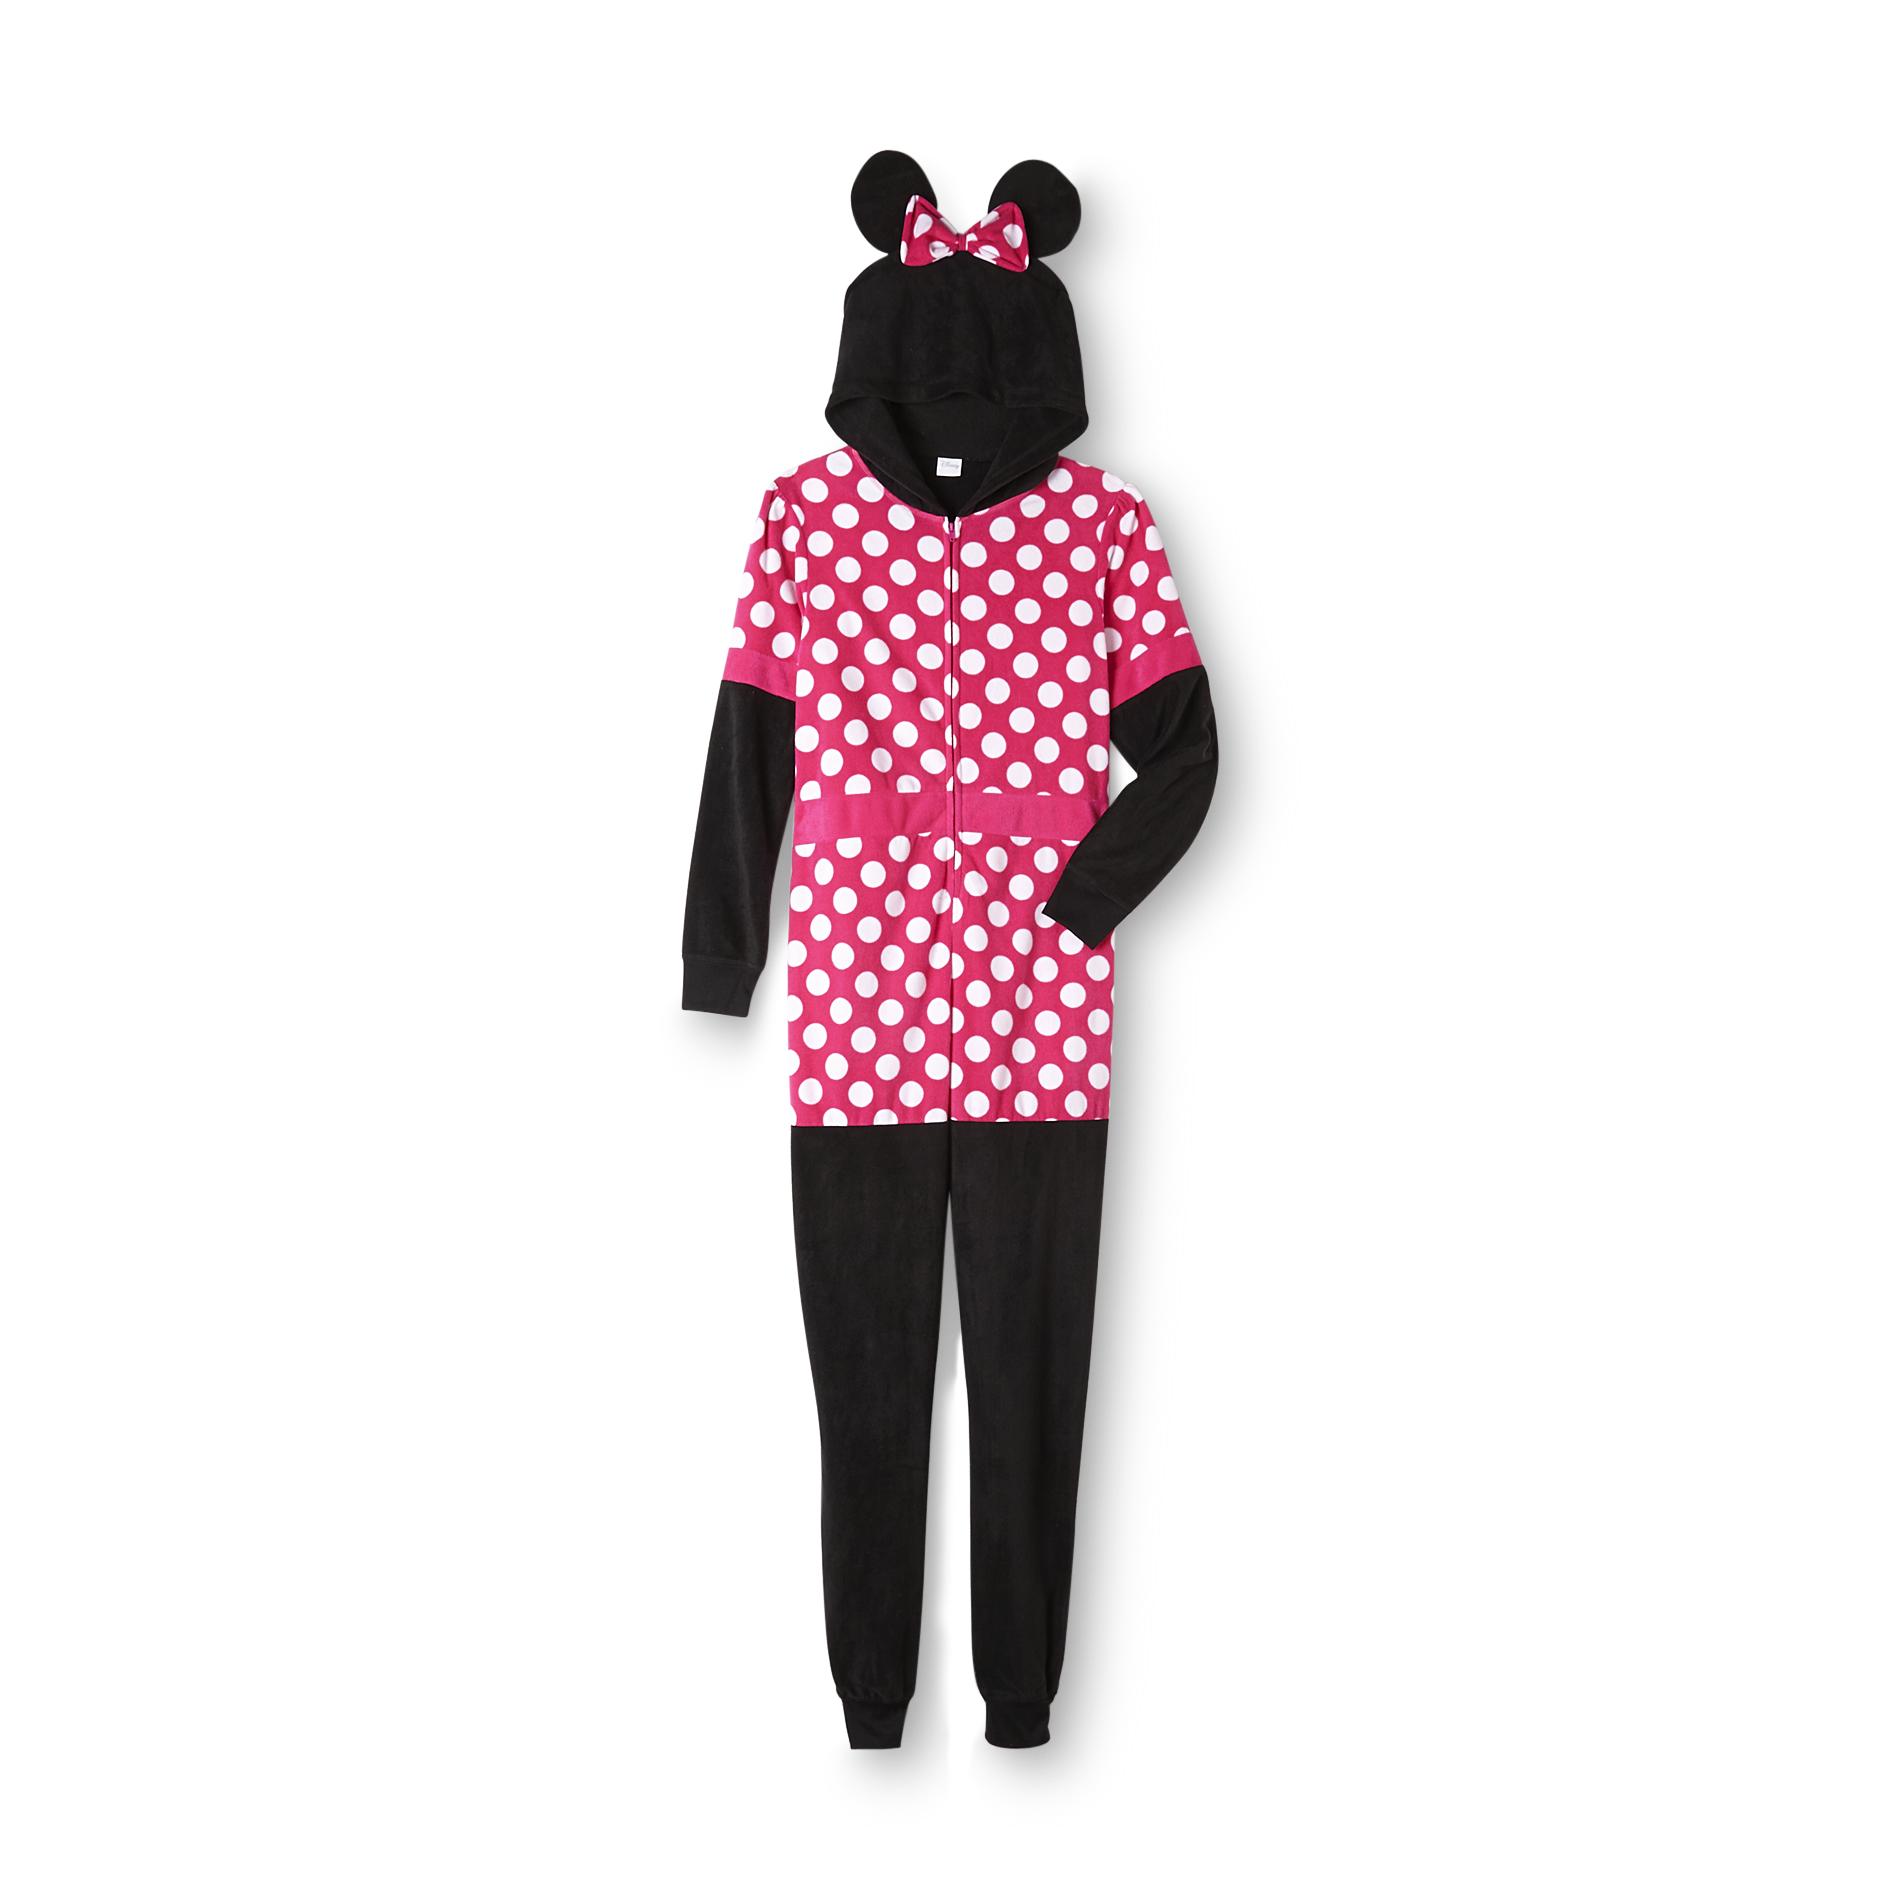 Disney Minnie Mouse Women's Sleeper Pajamas - Polka Dot